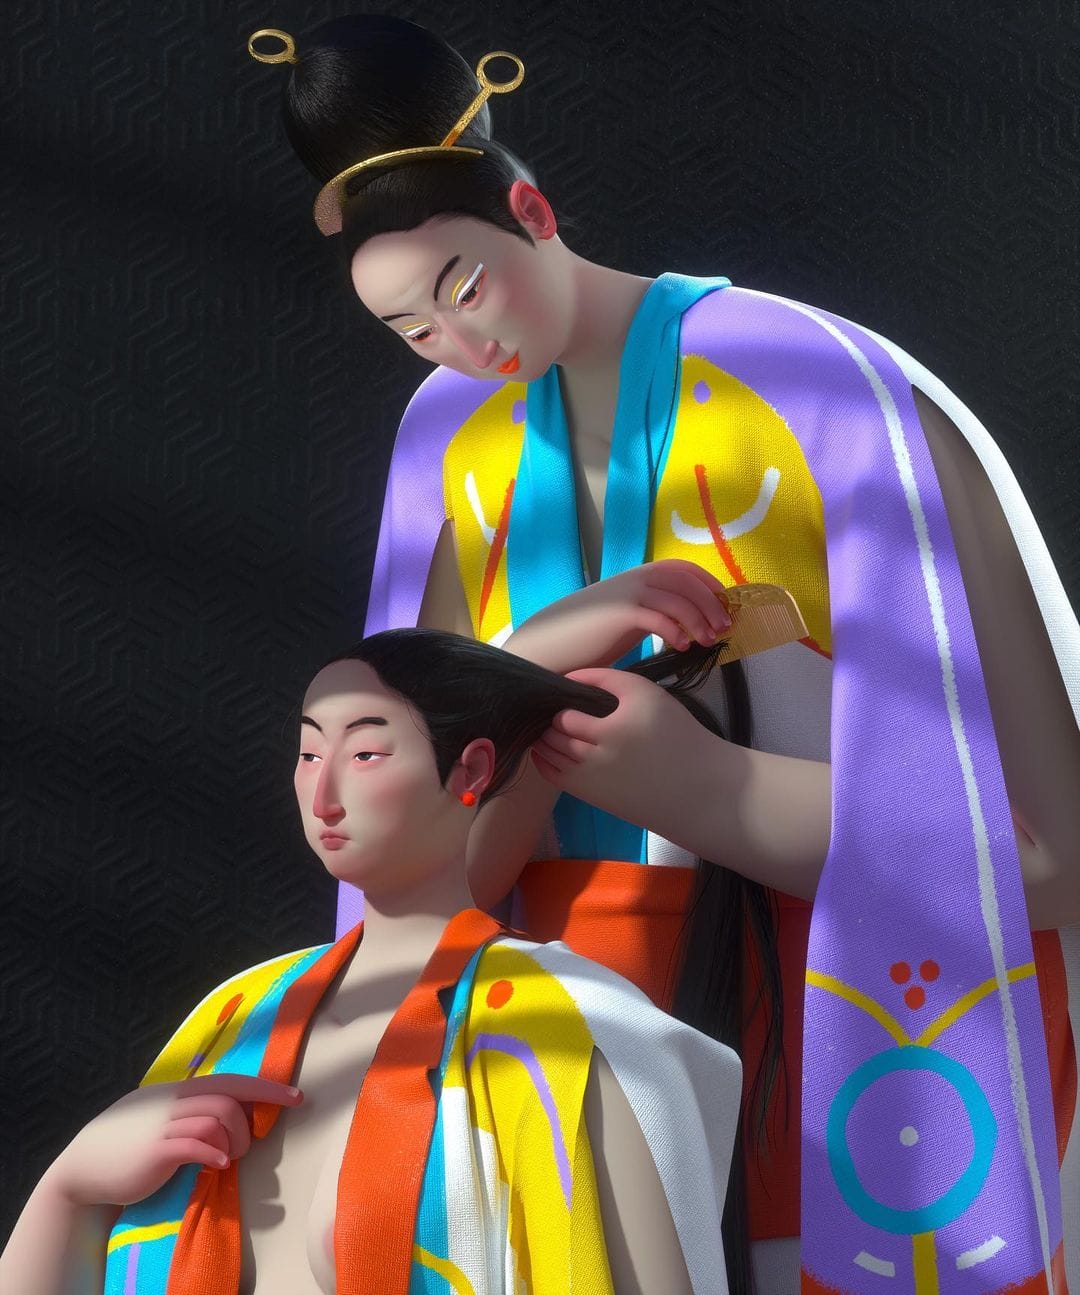 Oeuvre 3D: Une mère peigne les cheveux d'une jeune fille. Toutes deux sont vêtues de vêtements traditionnels asiatiques violet, jaune et orange